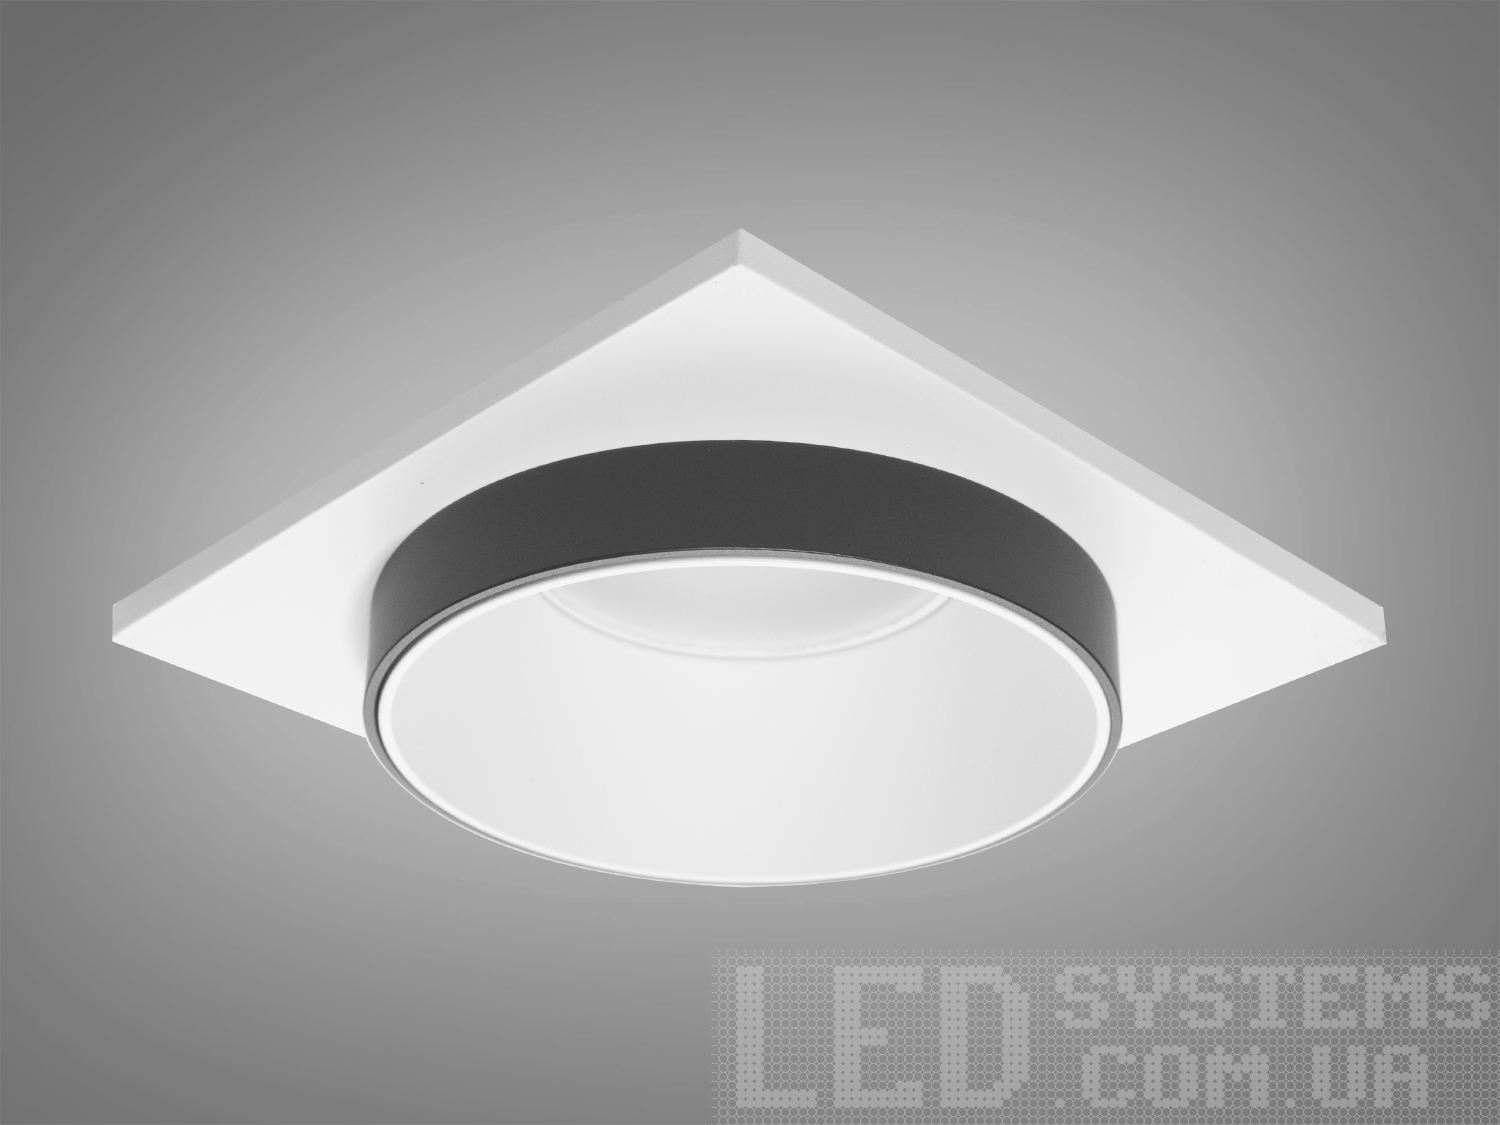 Нова серія точкових світильників дозволить зробити Вашу квартиру стильною та сучасною. Дані світильники ідеально підходять для світлодіодних ламп, які забезпечують найкращі параметри освітлення та енергозбереження, дозволяючи дизайнеру інтер'єру можливість для креативу. 
Точковий світильник - це спеціальний вбудований світильник, який використовується для спрямованого або загального підсвічування певних ділянок Вашої квартири. Їх застосовують на кухні, у ванній кімнаті, для освітлення сходів та у житлових кімнатах. При рівномірному розподілі різних джерел світла (наприклад: люстра в центрі кімнати + точкові світильники по краю стелі) ви можете досягти ефекту відсутності тіні і зорово збільшити простір кімнати. Куди б Ви не подивилися, точкові світильники будуть висвітлювати простір перед Вами та всі предмети, що Вас оточують. 
Алюмінієві світильники не схильні до корозії, добре відводять тепло від лампи. 
Лампа до комплекту не входить.